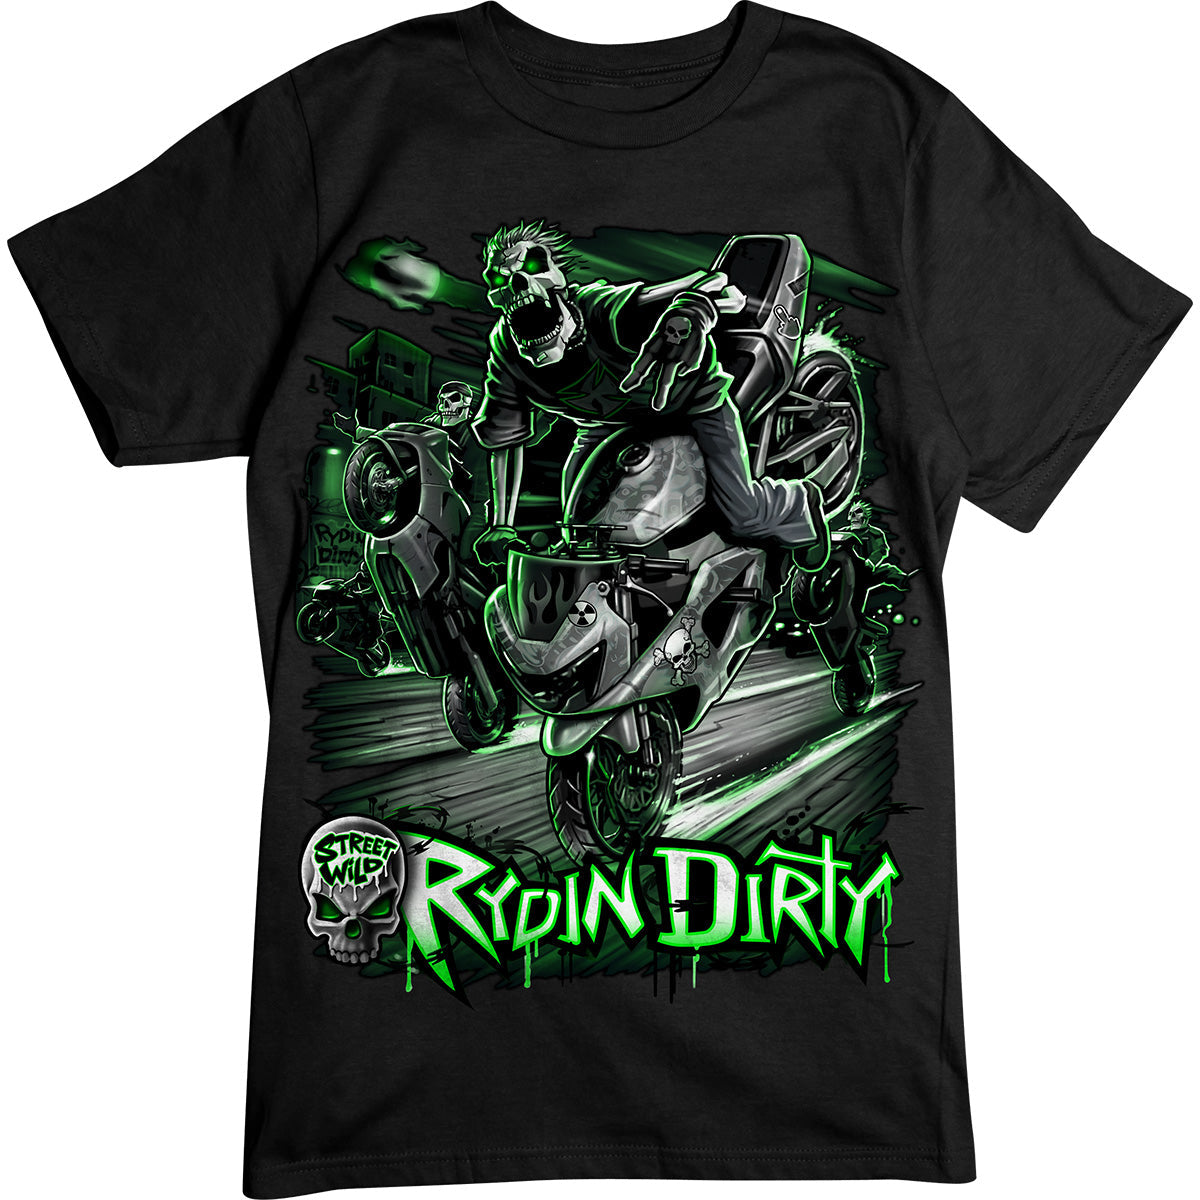 Rydin Dirty, T-Shirt